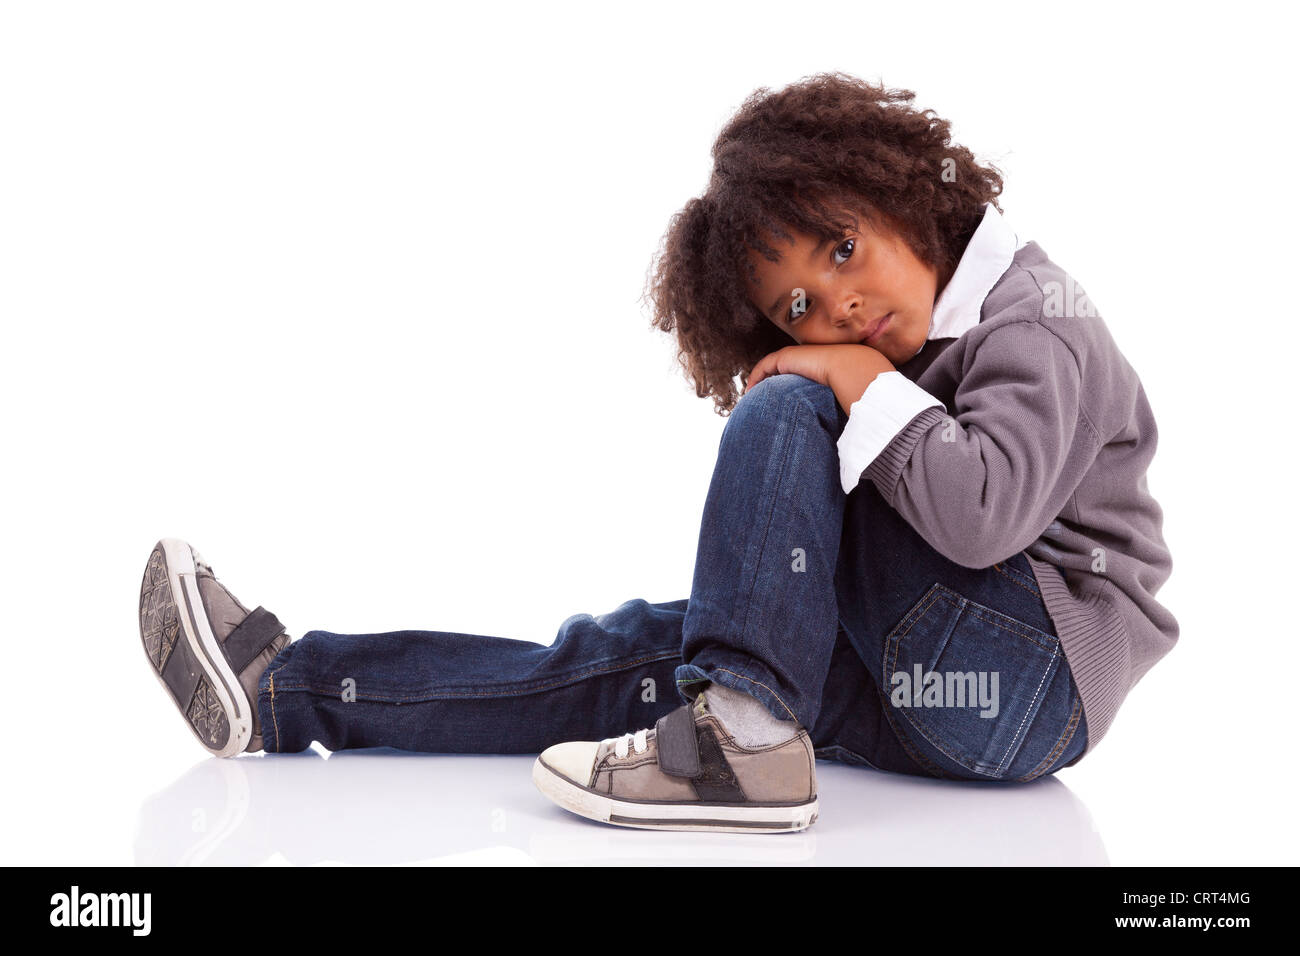 Portrait d'un petit garçon assis sur le plancher, isolé sur fond blanc Banque D'Images